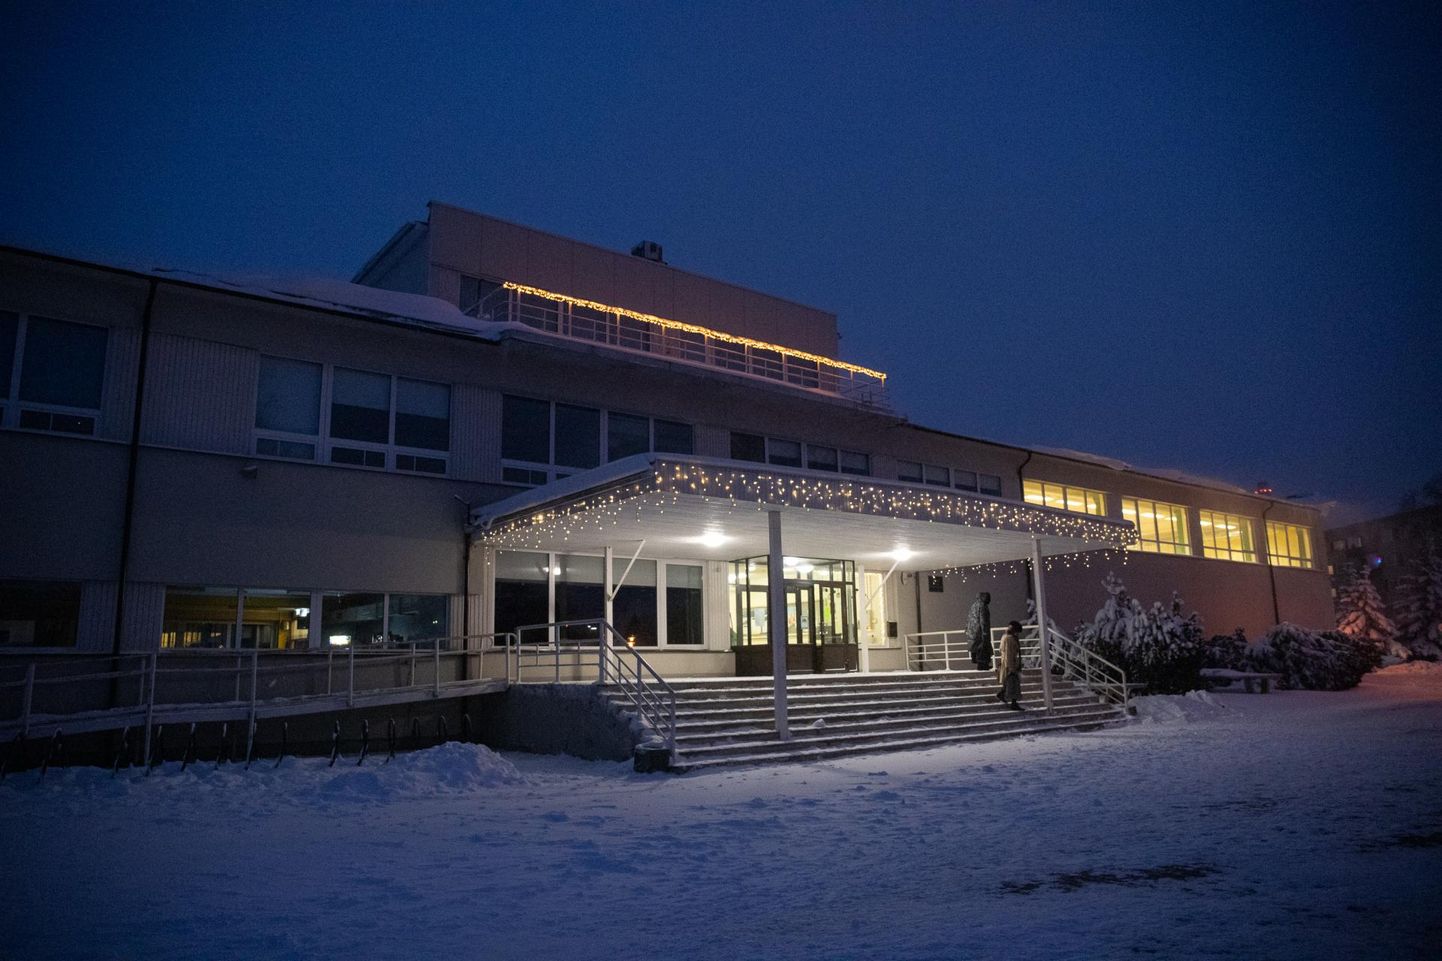 Maakonna suurim kool, Rakvere reaalgümnaasium tähistab 48. sünnipäeva. Vilistlaspidu loodetakse korraldata aasta pärast kevadel, kui lendu läheb kooli gümnasistide viimane lend.